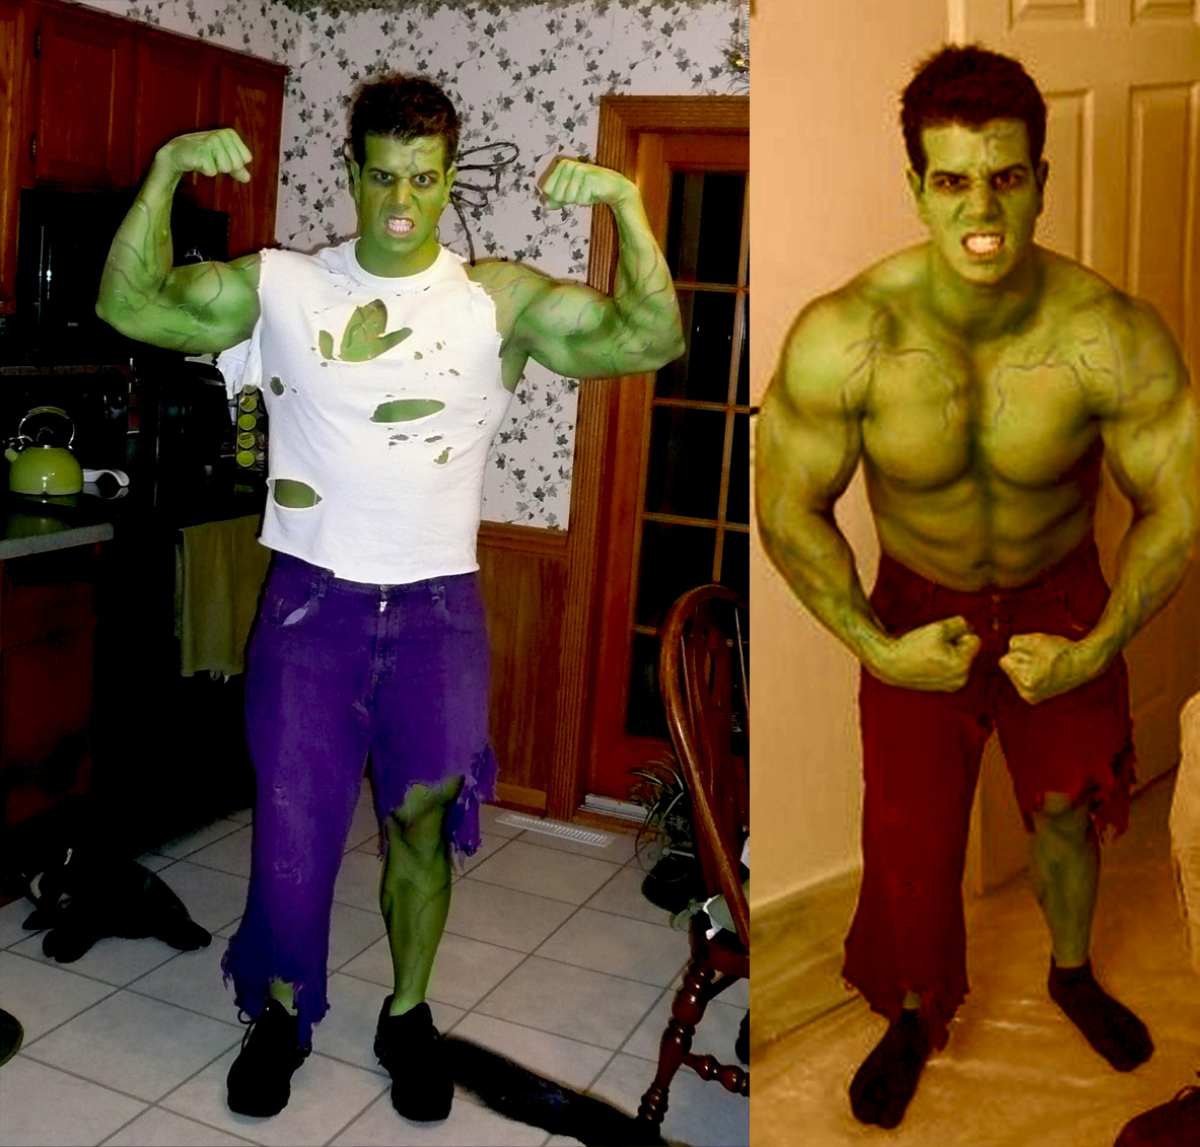 incredible hulk costume men